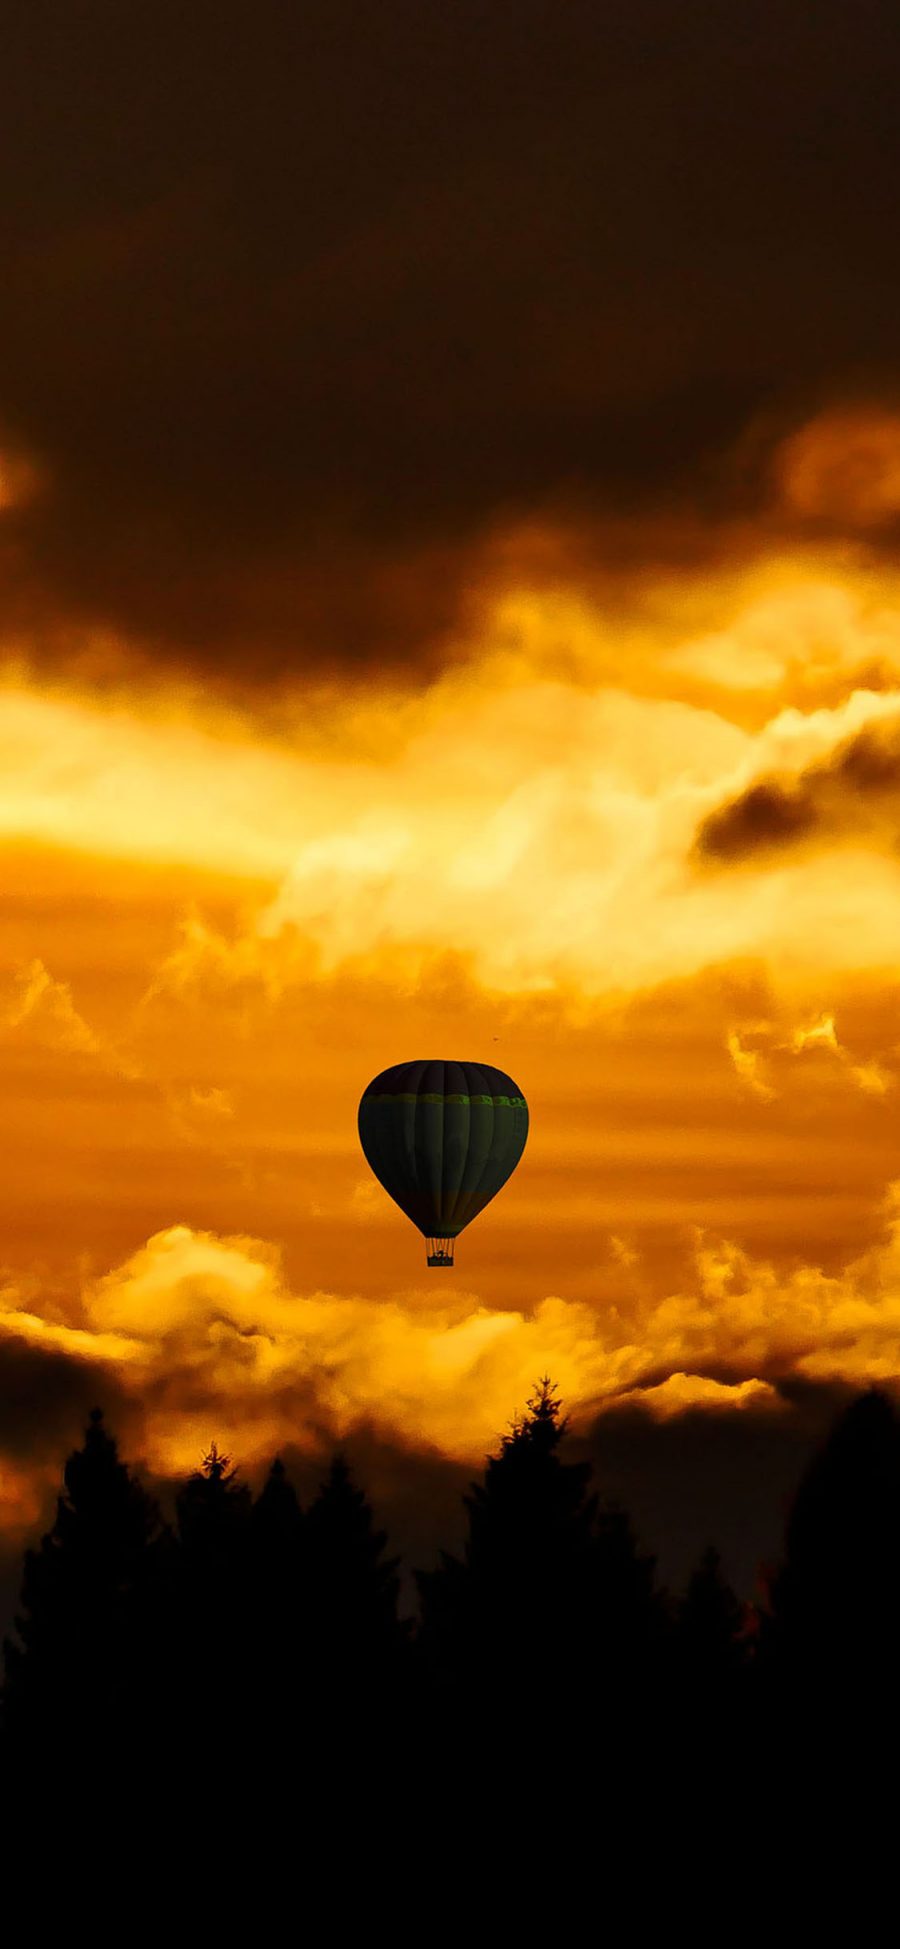 [2436×1125]天空 夕阳 热气球 飞行 苹果手机壁纸图片